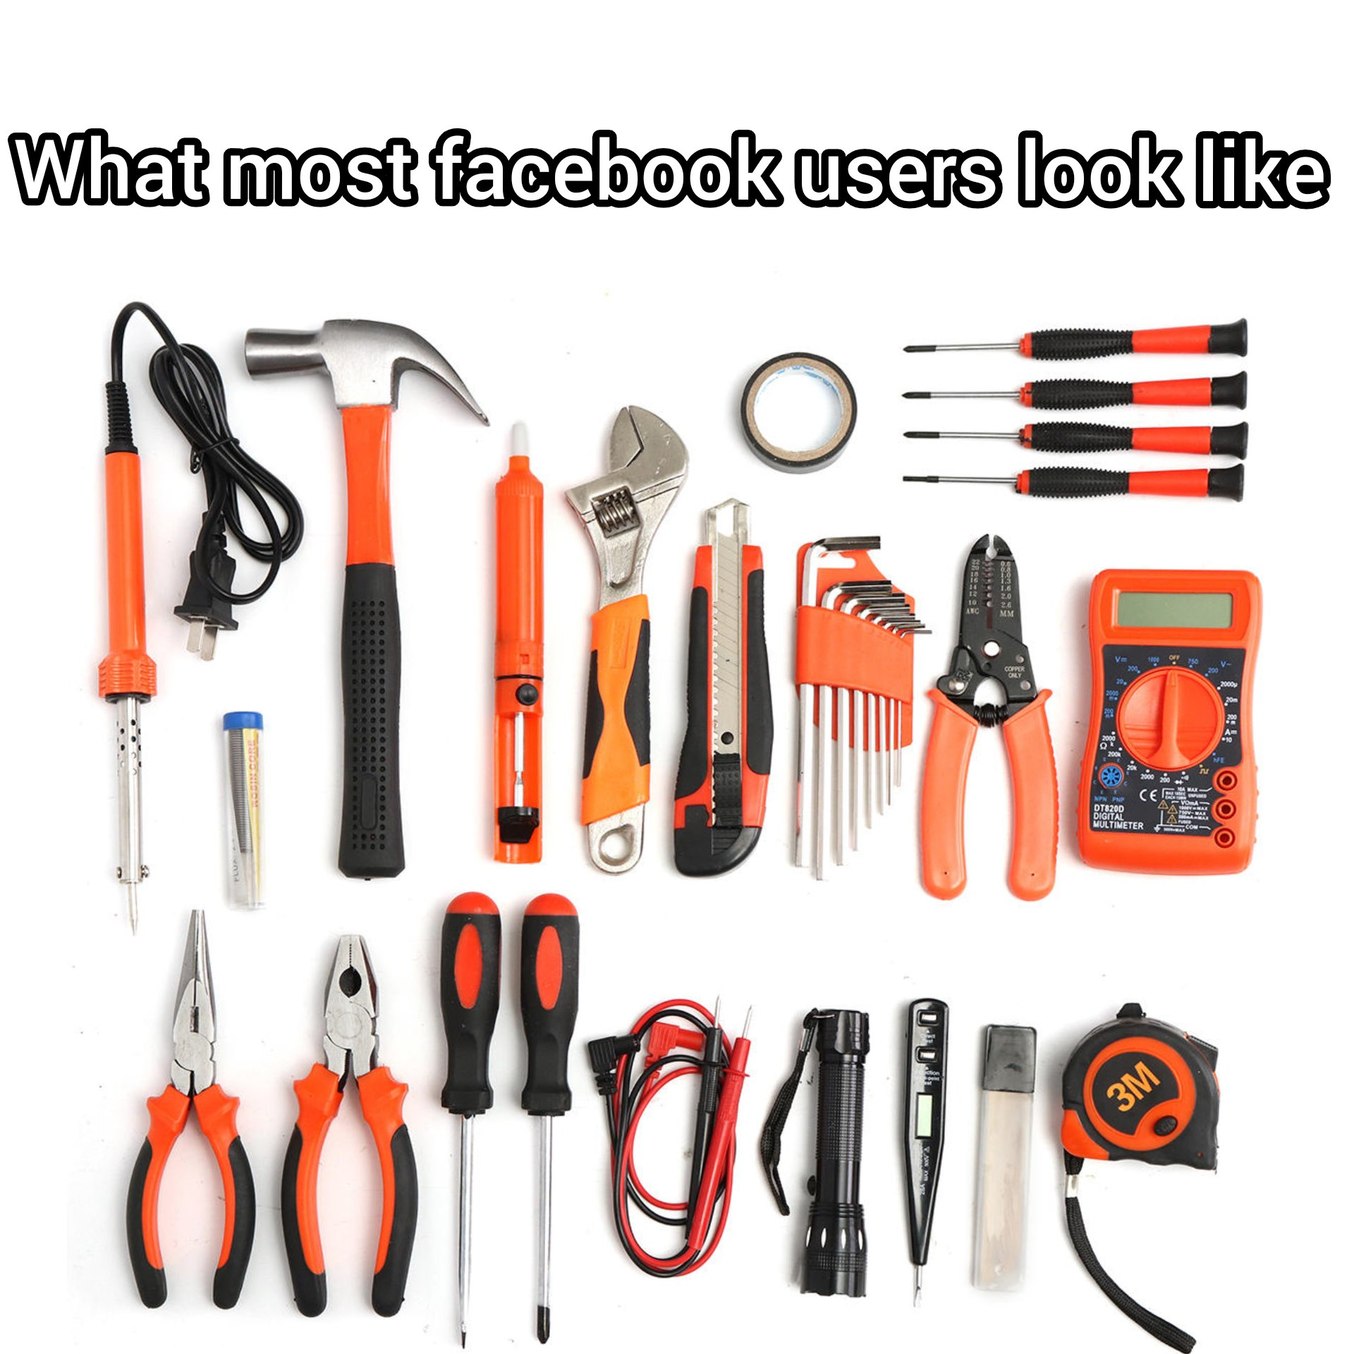 Facebook Tools - meme